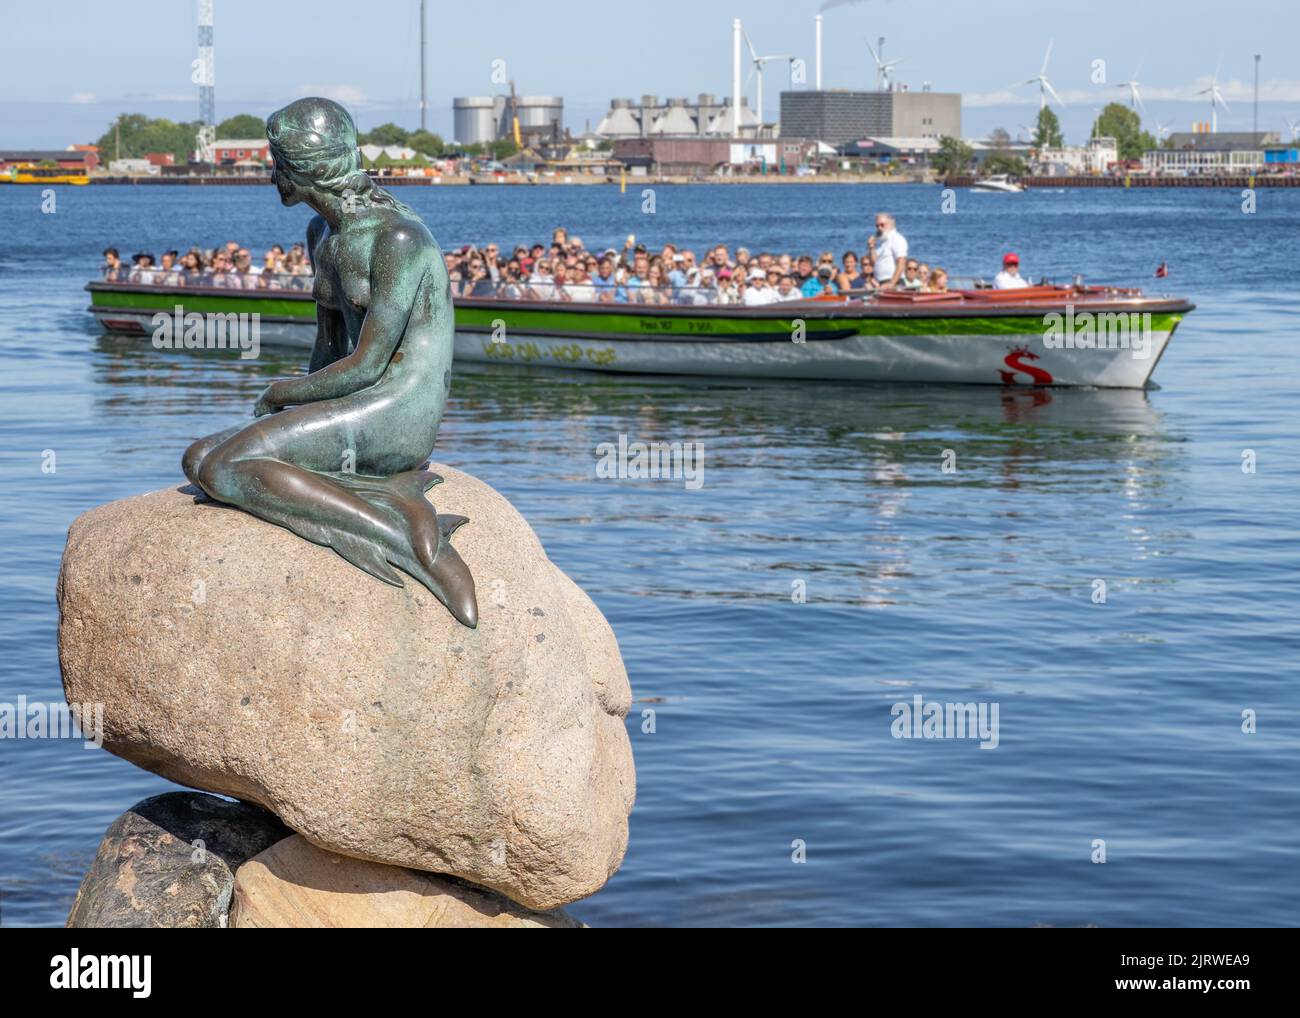 Turistas en Copenhague, Dinamarca, visitando la escultura de bronce de la Sirenita de Edvard Eriksen en el paseo marítimo de Langelinie, junto al puerto de la ciudad Foto de stock